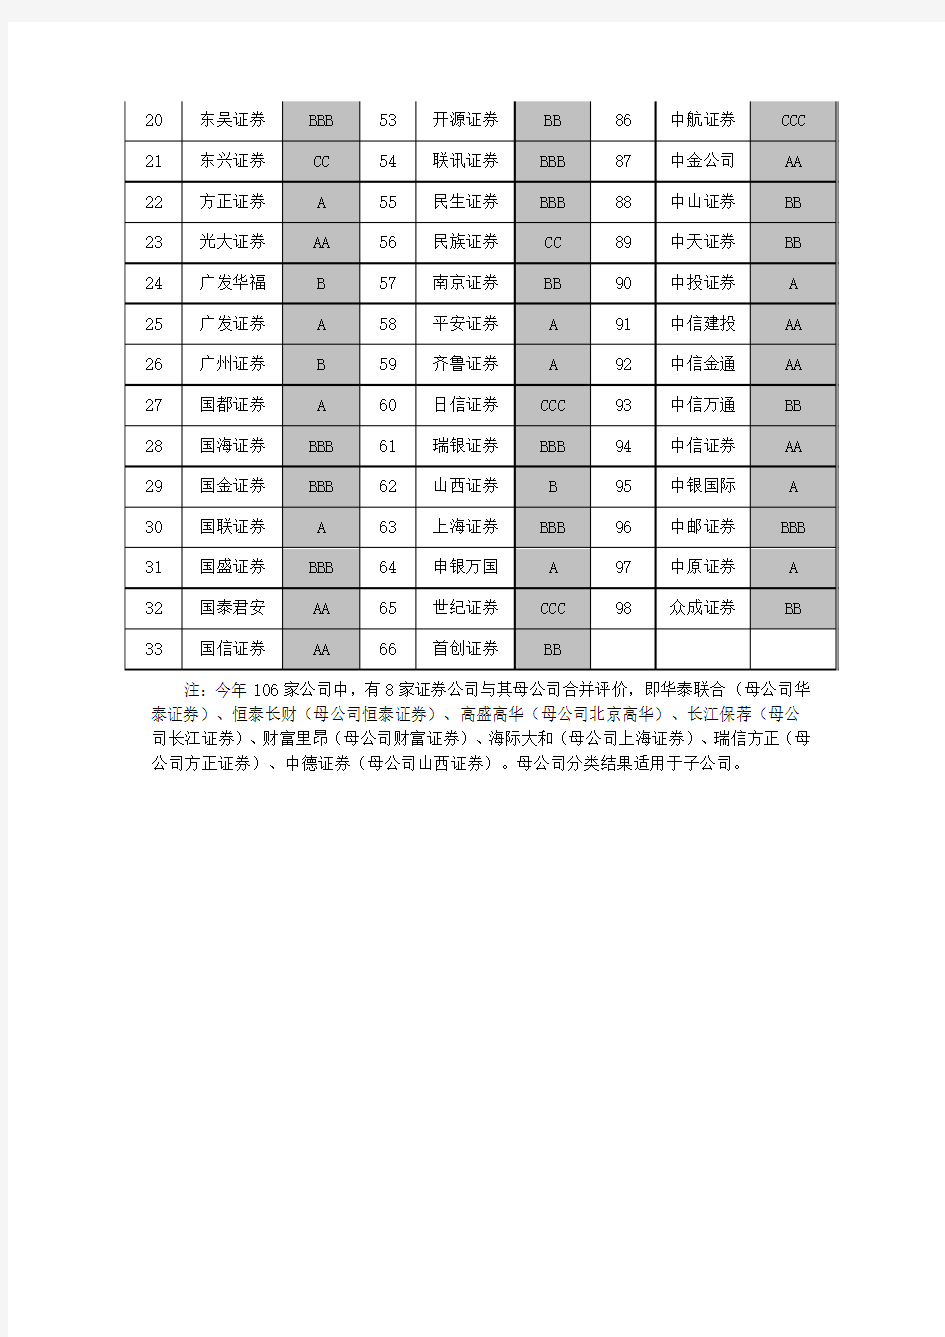 中国证监会2010证券公司分类结果